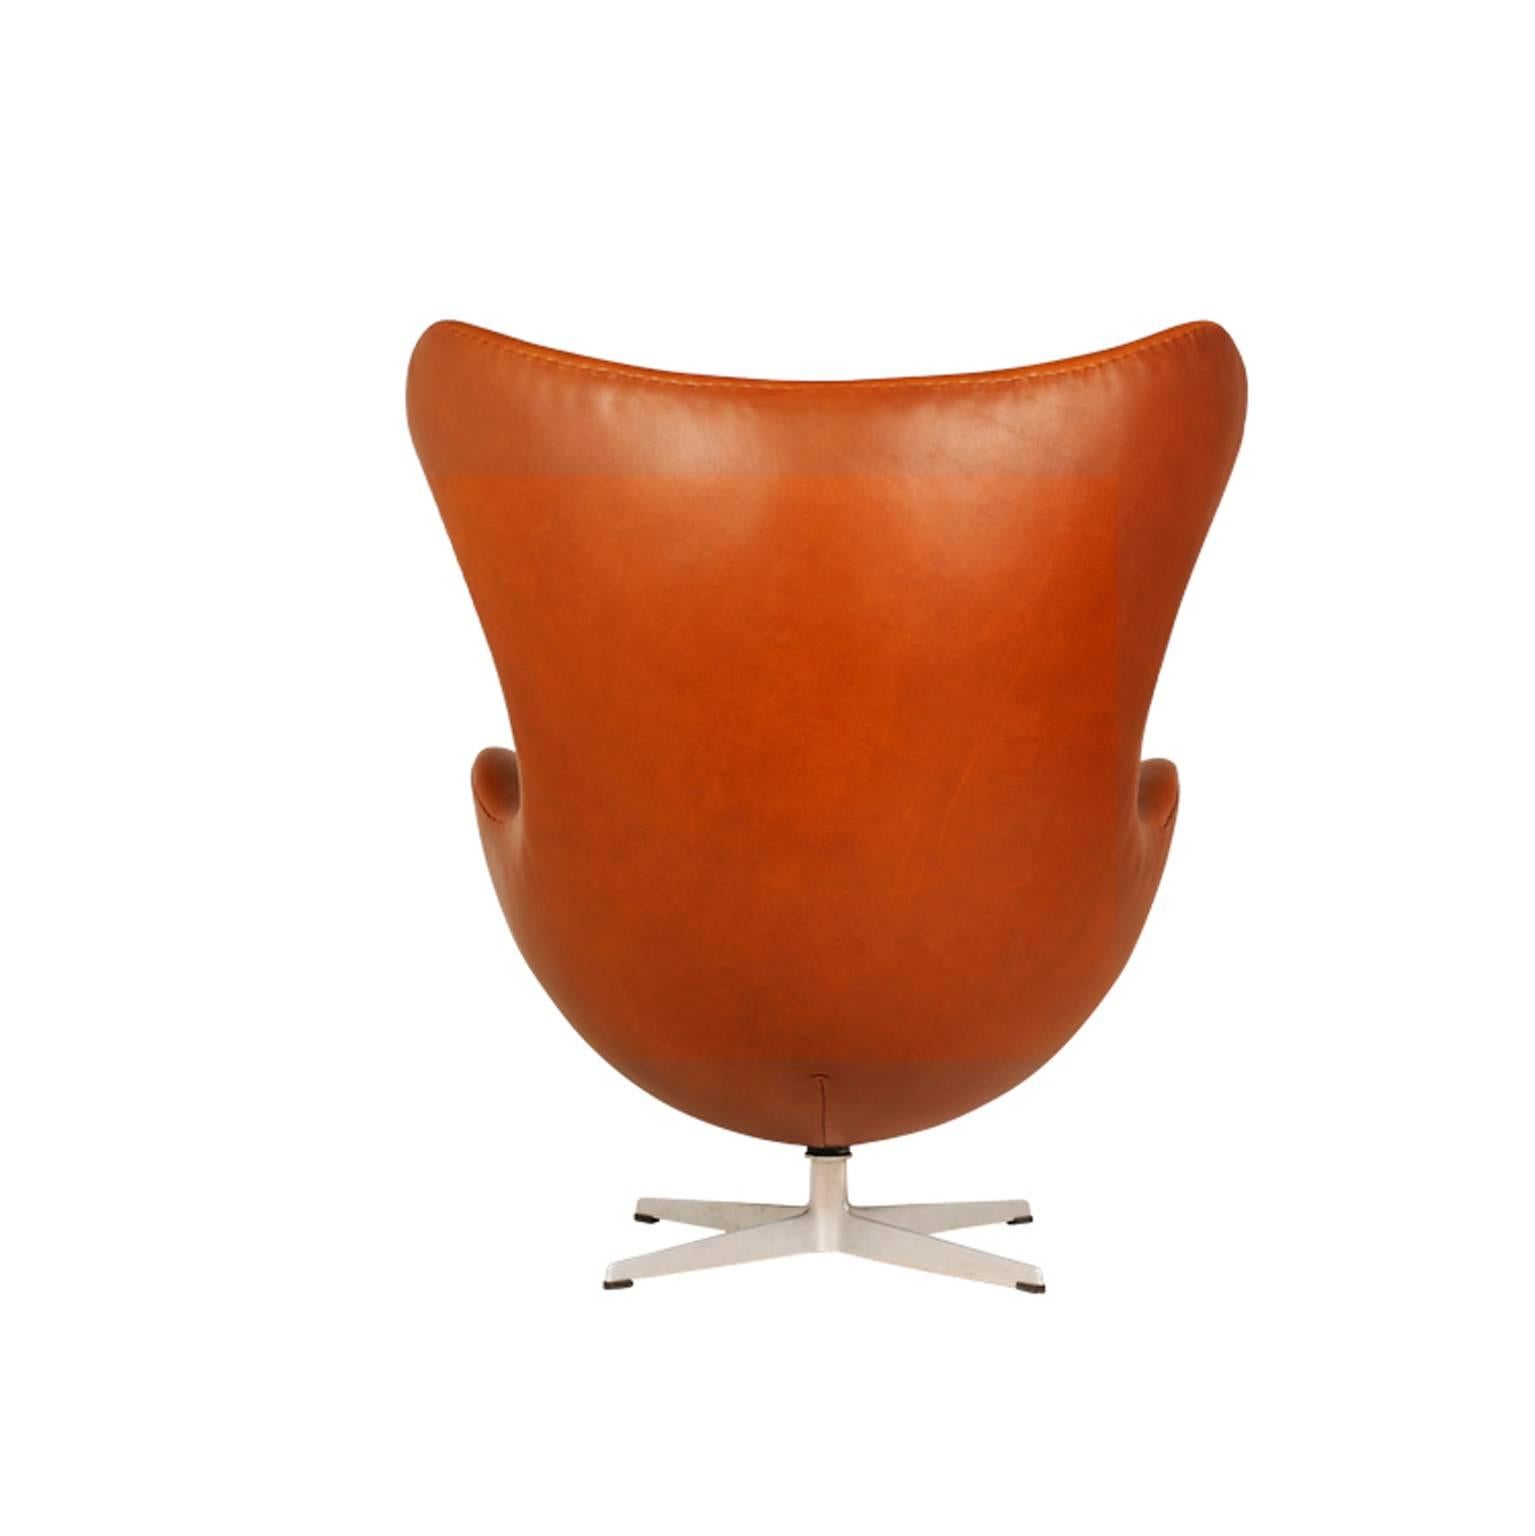 Danish Arne Jacobsen “Egg” Chair with Ottoman for Fritz Hansen